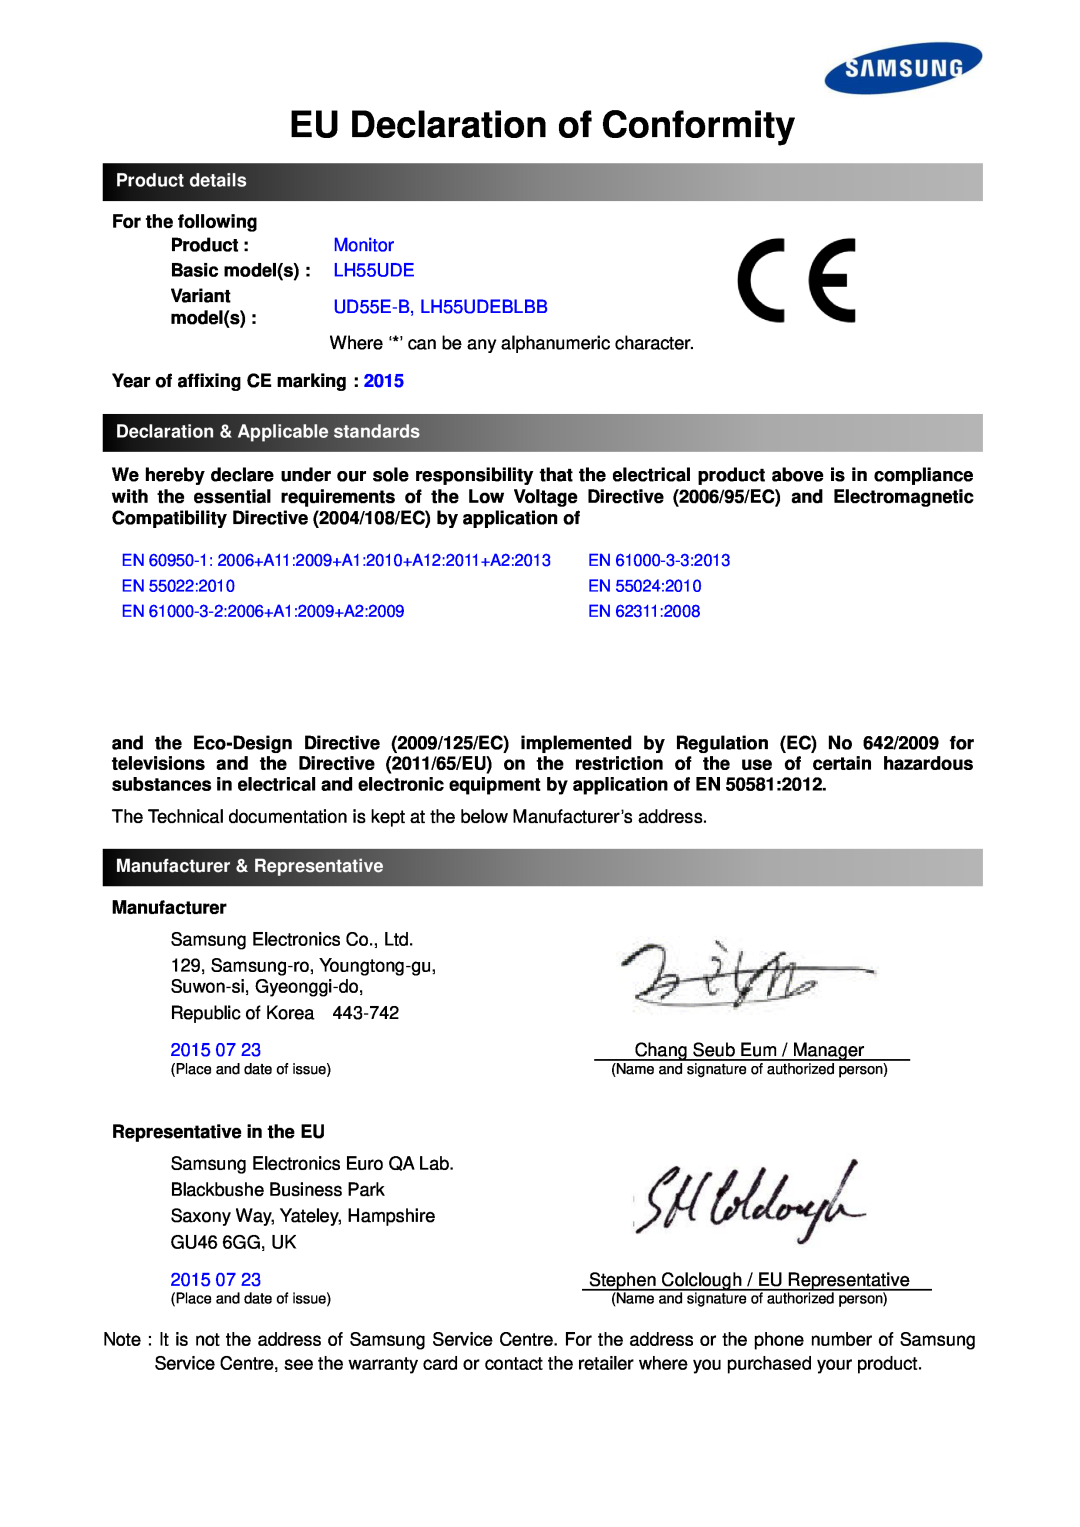 Samsung LH55UDEHLBB/EN manual EU Declaration of Conformity, Product details, Monitor, UD55E-B, LH55UDEBLBB, 2015 07 